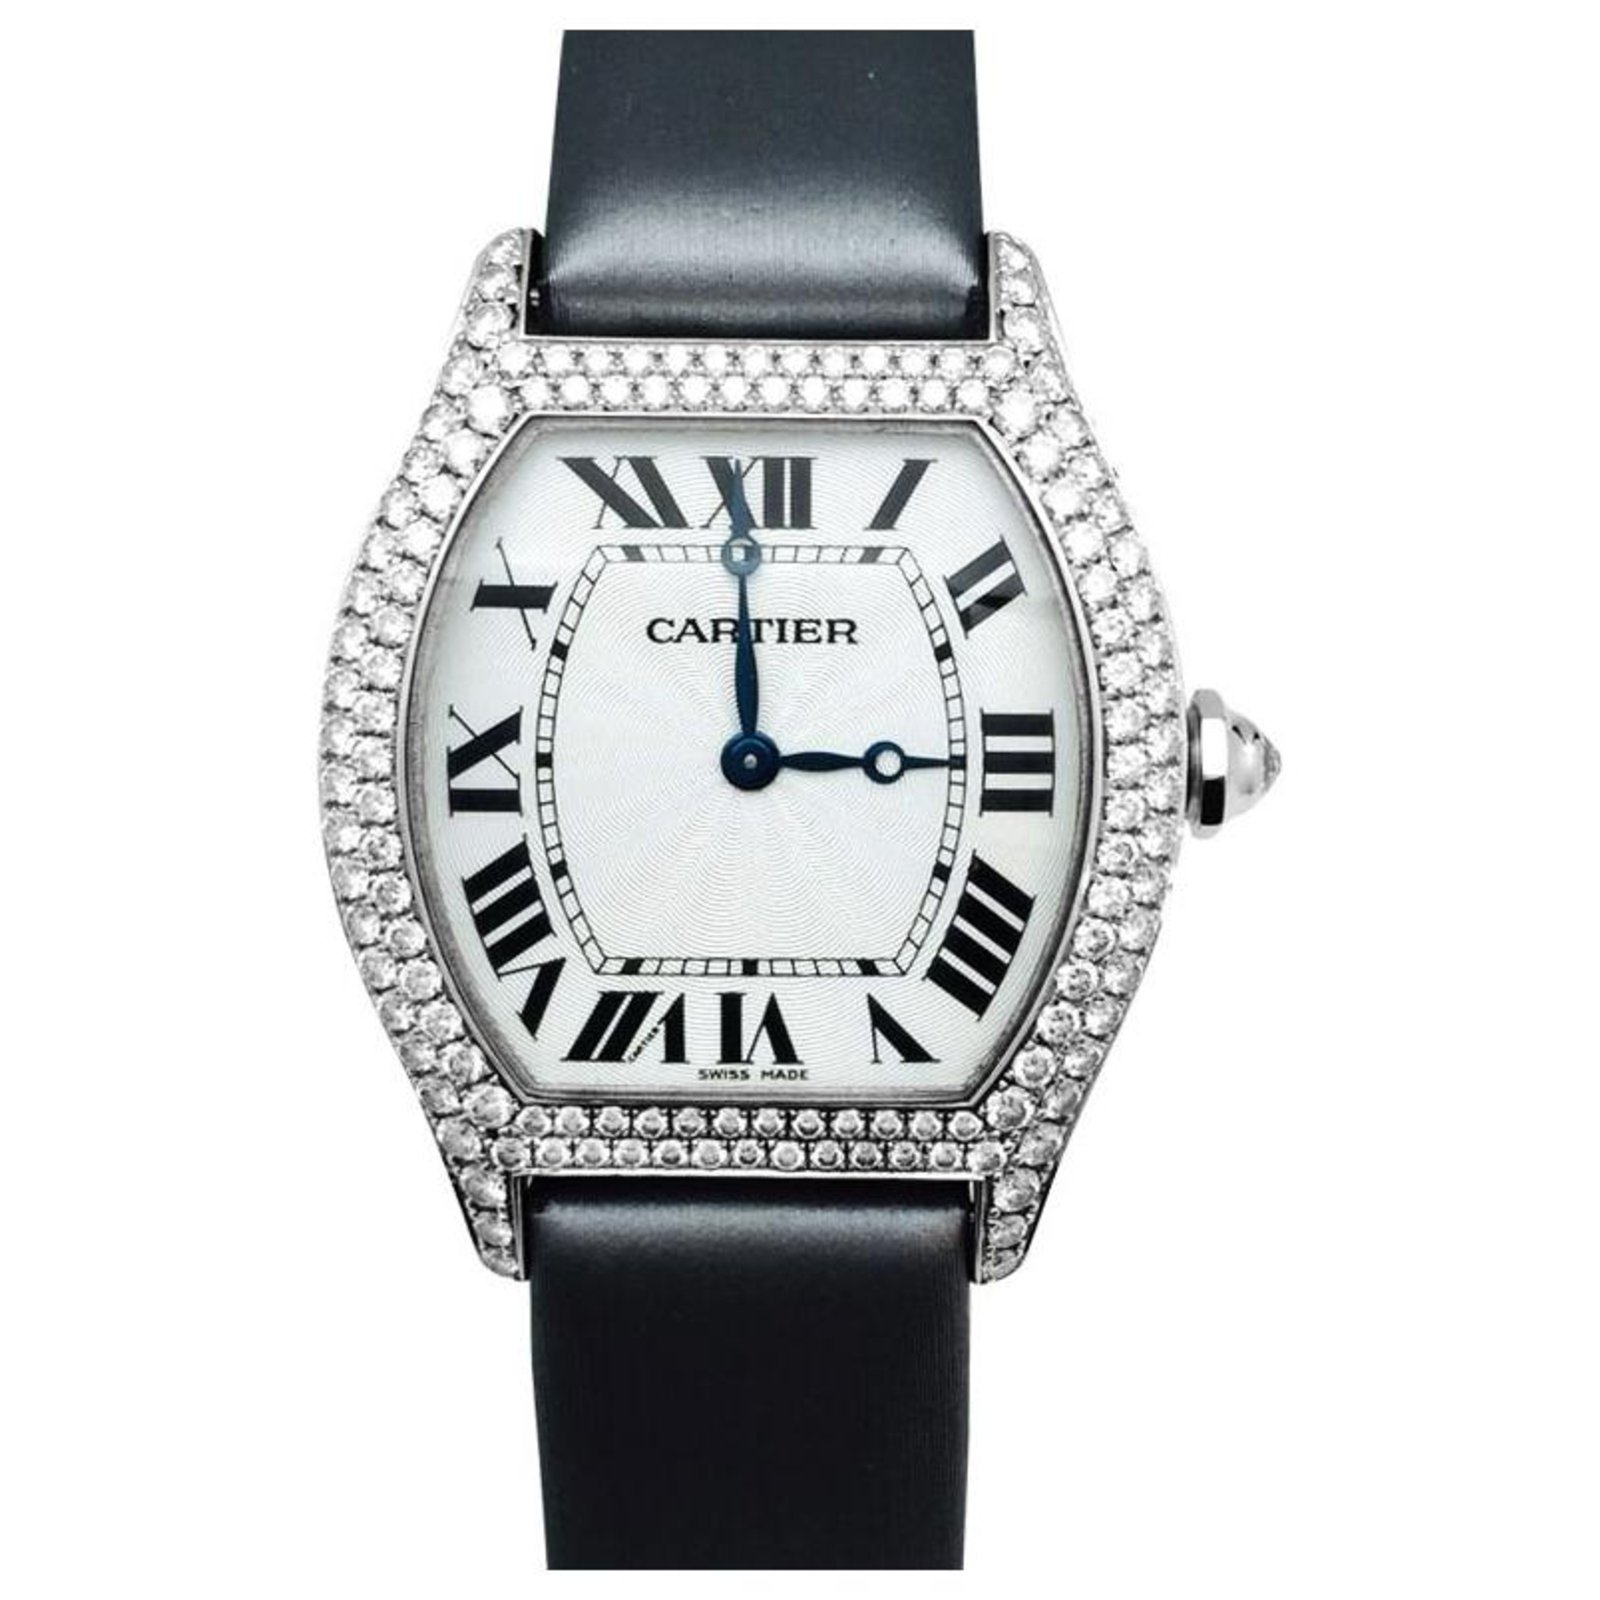 Cartier Cartier watch, model \